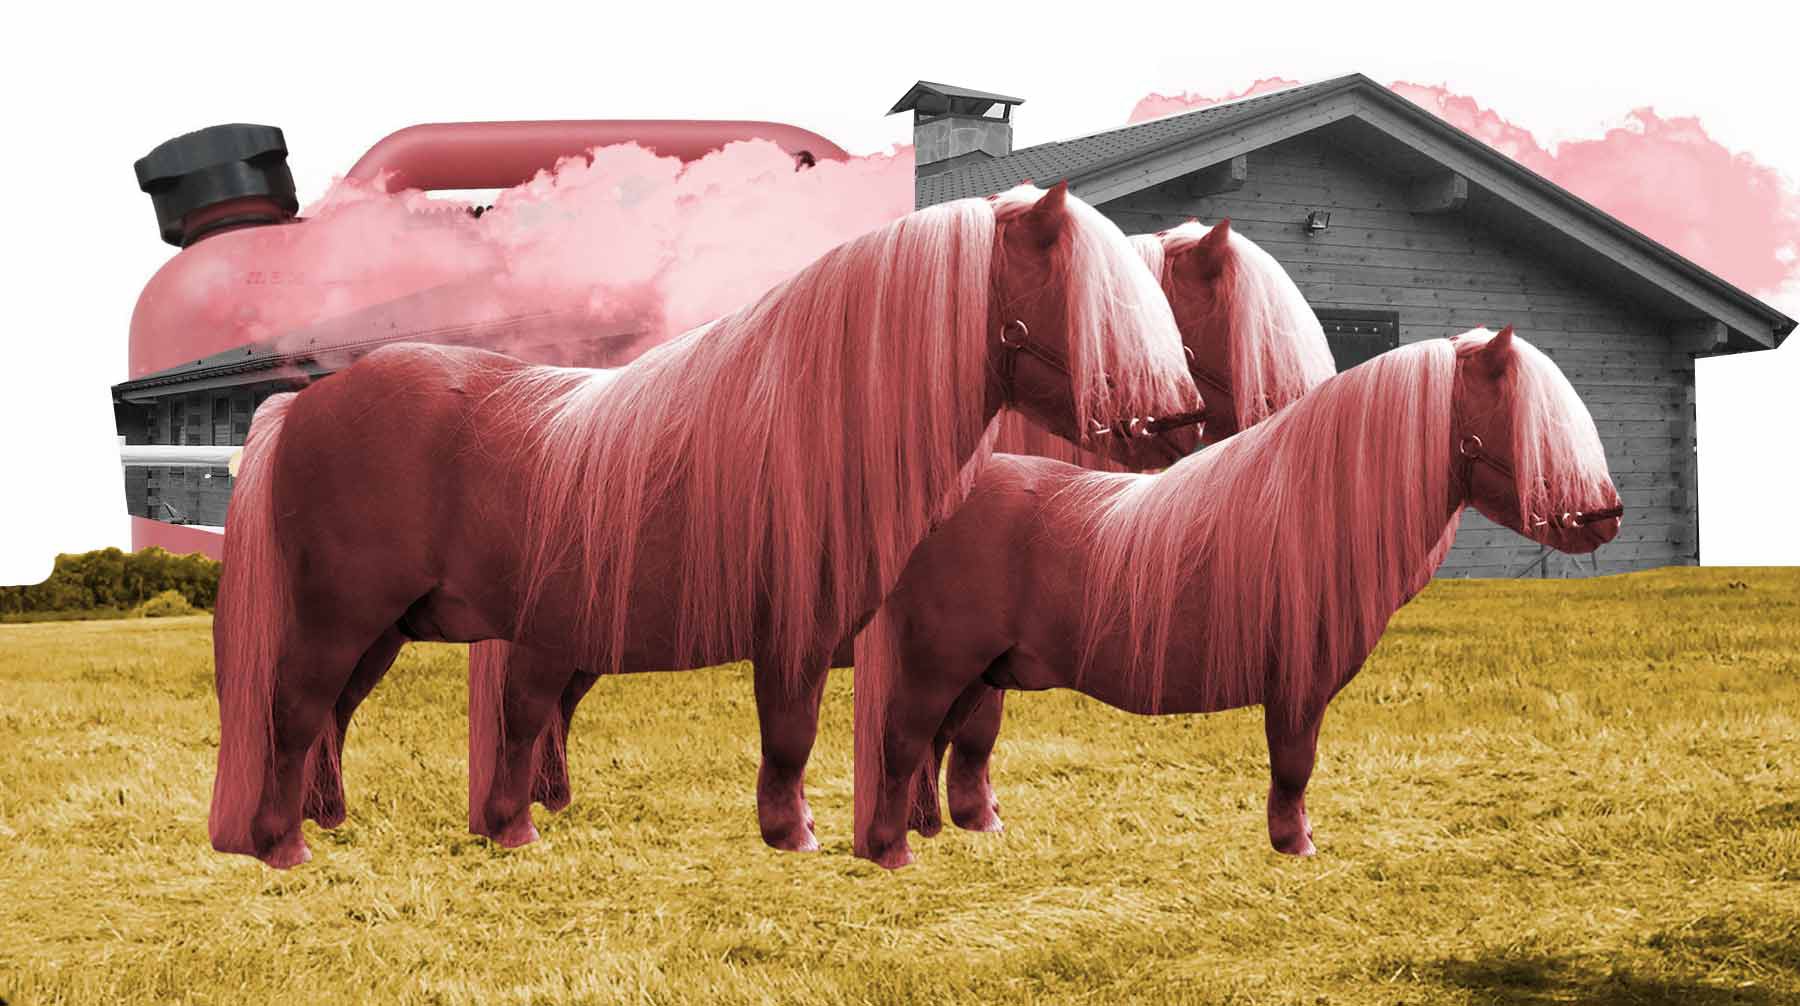 Dailystorm - Девять пони сгорели на ранчо «Идальго» в Ленобласти. Ранчо находится на месте конюшни, владельцы которой съехали из-за поджогов